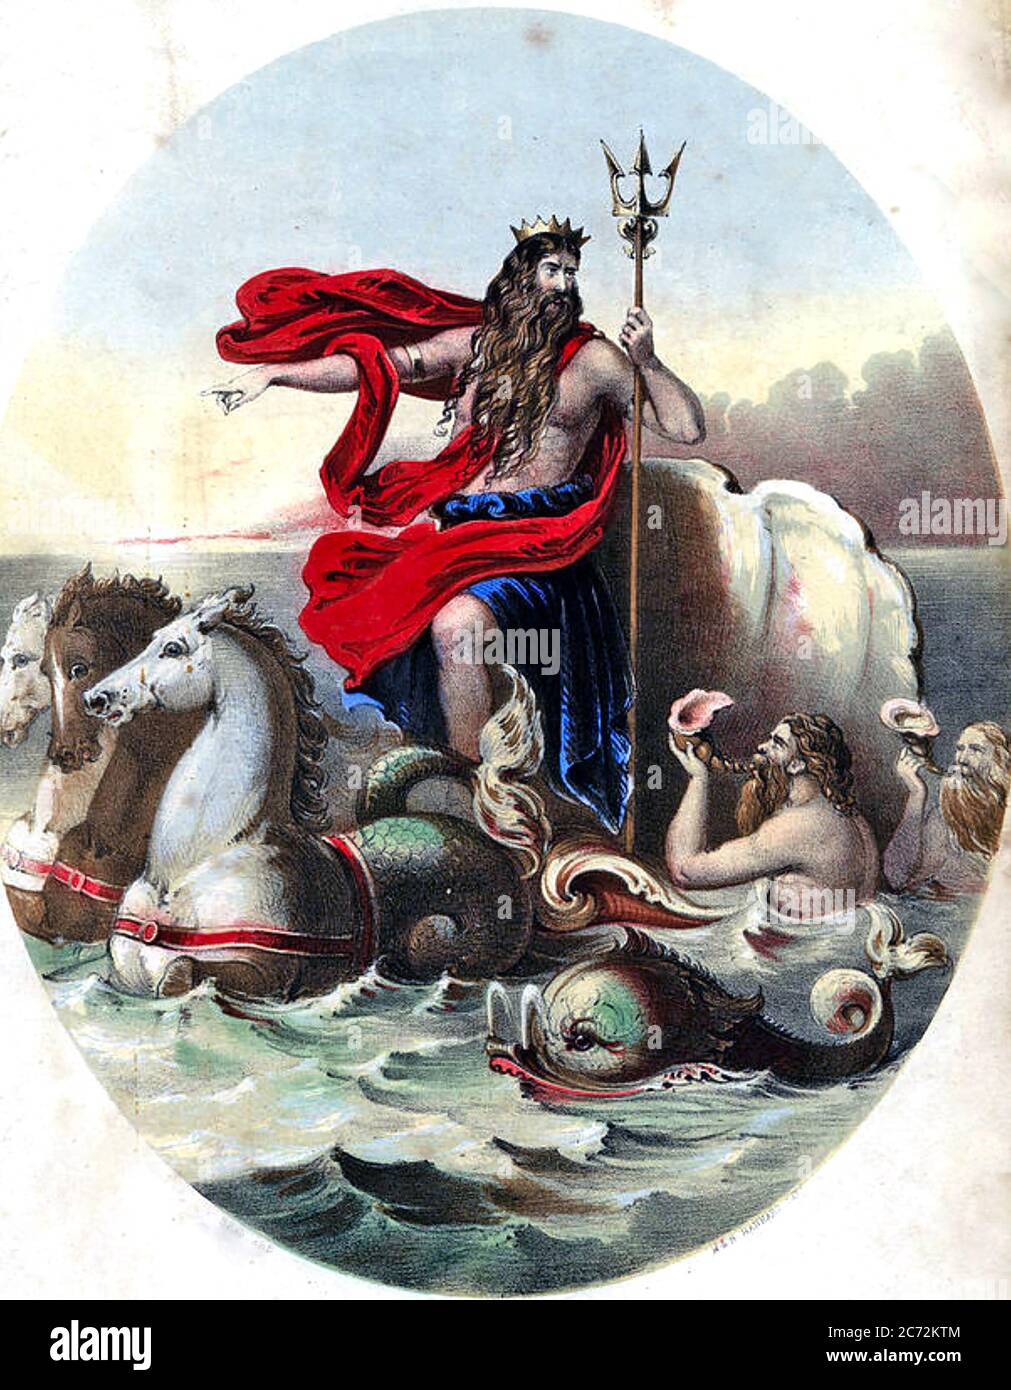 Neptun römischer gott -Fotos und -Bildmaterial in hoher Auflösung – Alamy